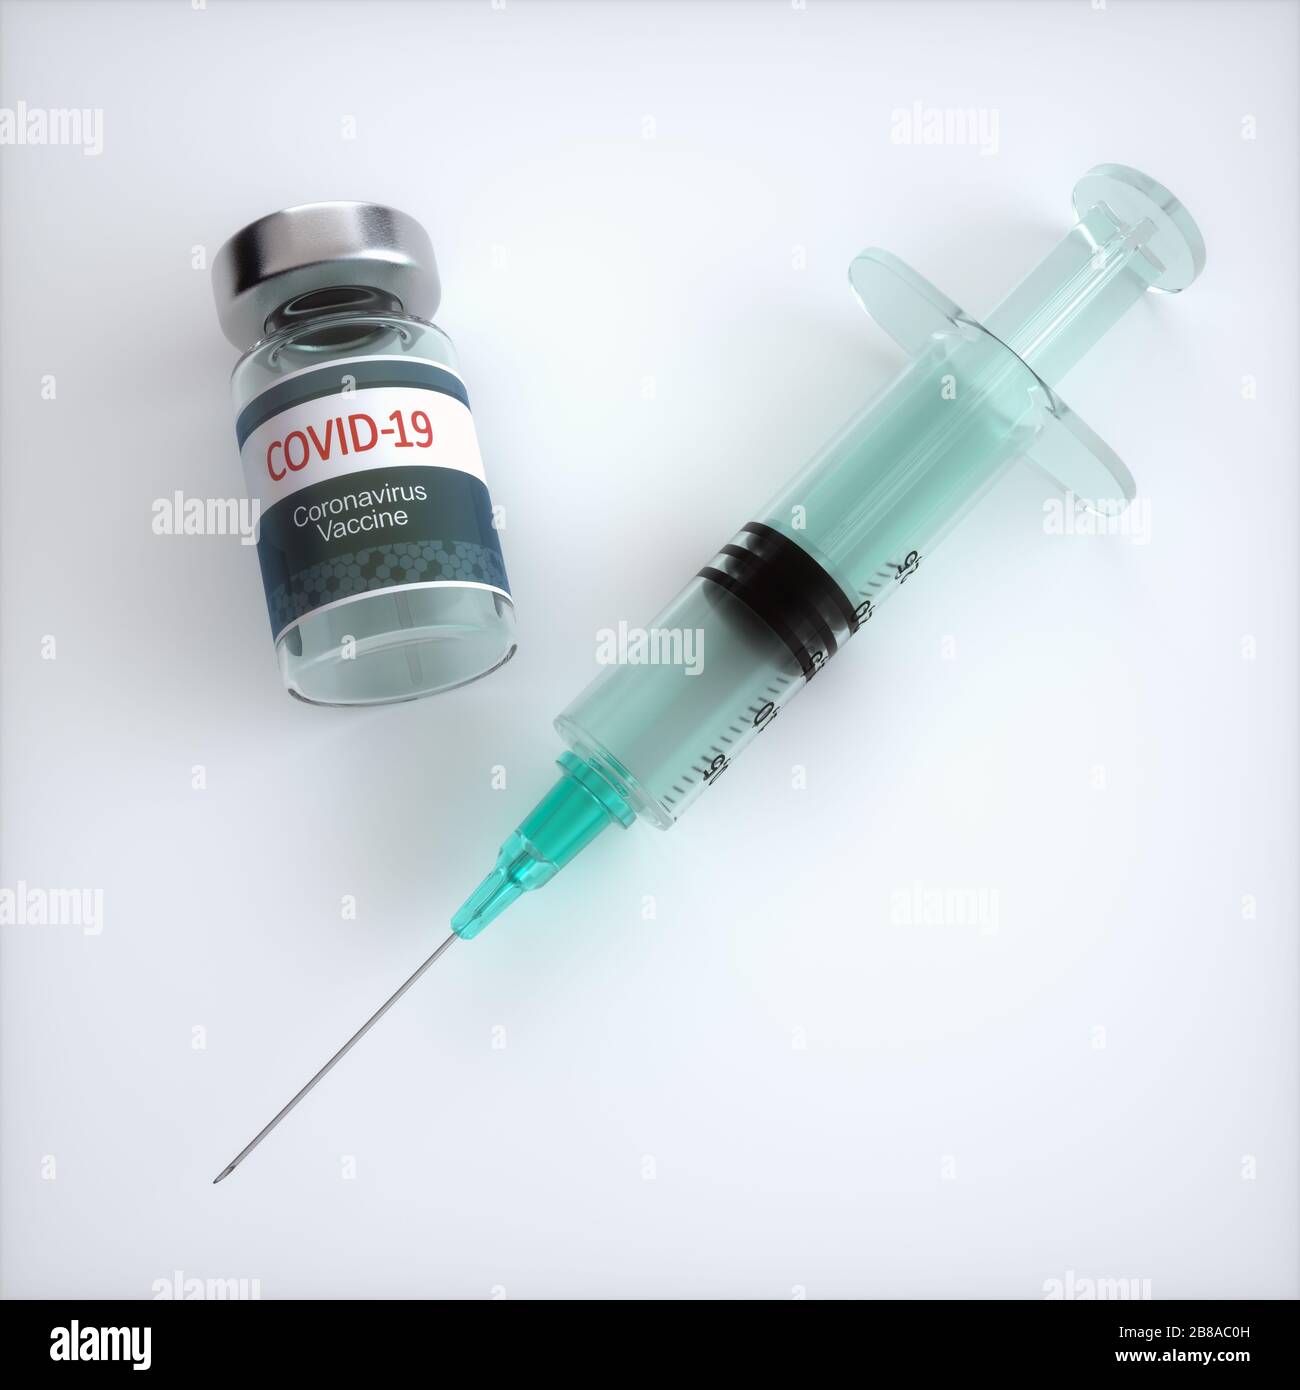 Imagen conceptual para el descubrimiento de una vacuna para el Covid-19, Coronavirus, 2019-nCoV, SARS-CoV-2. Foto de stock